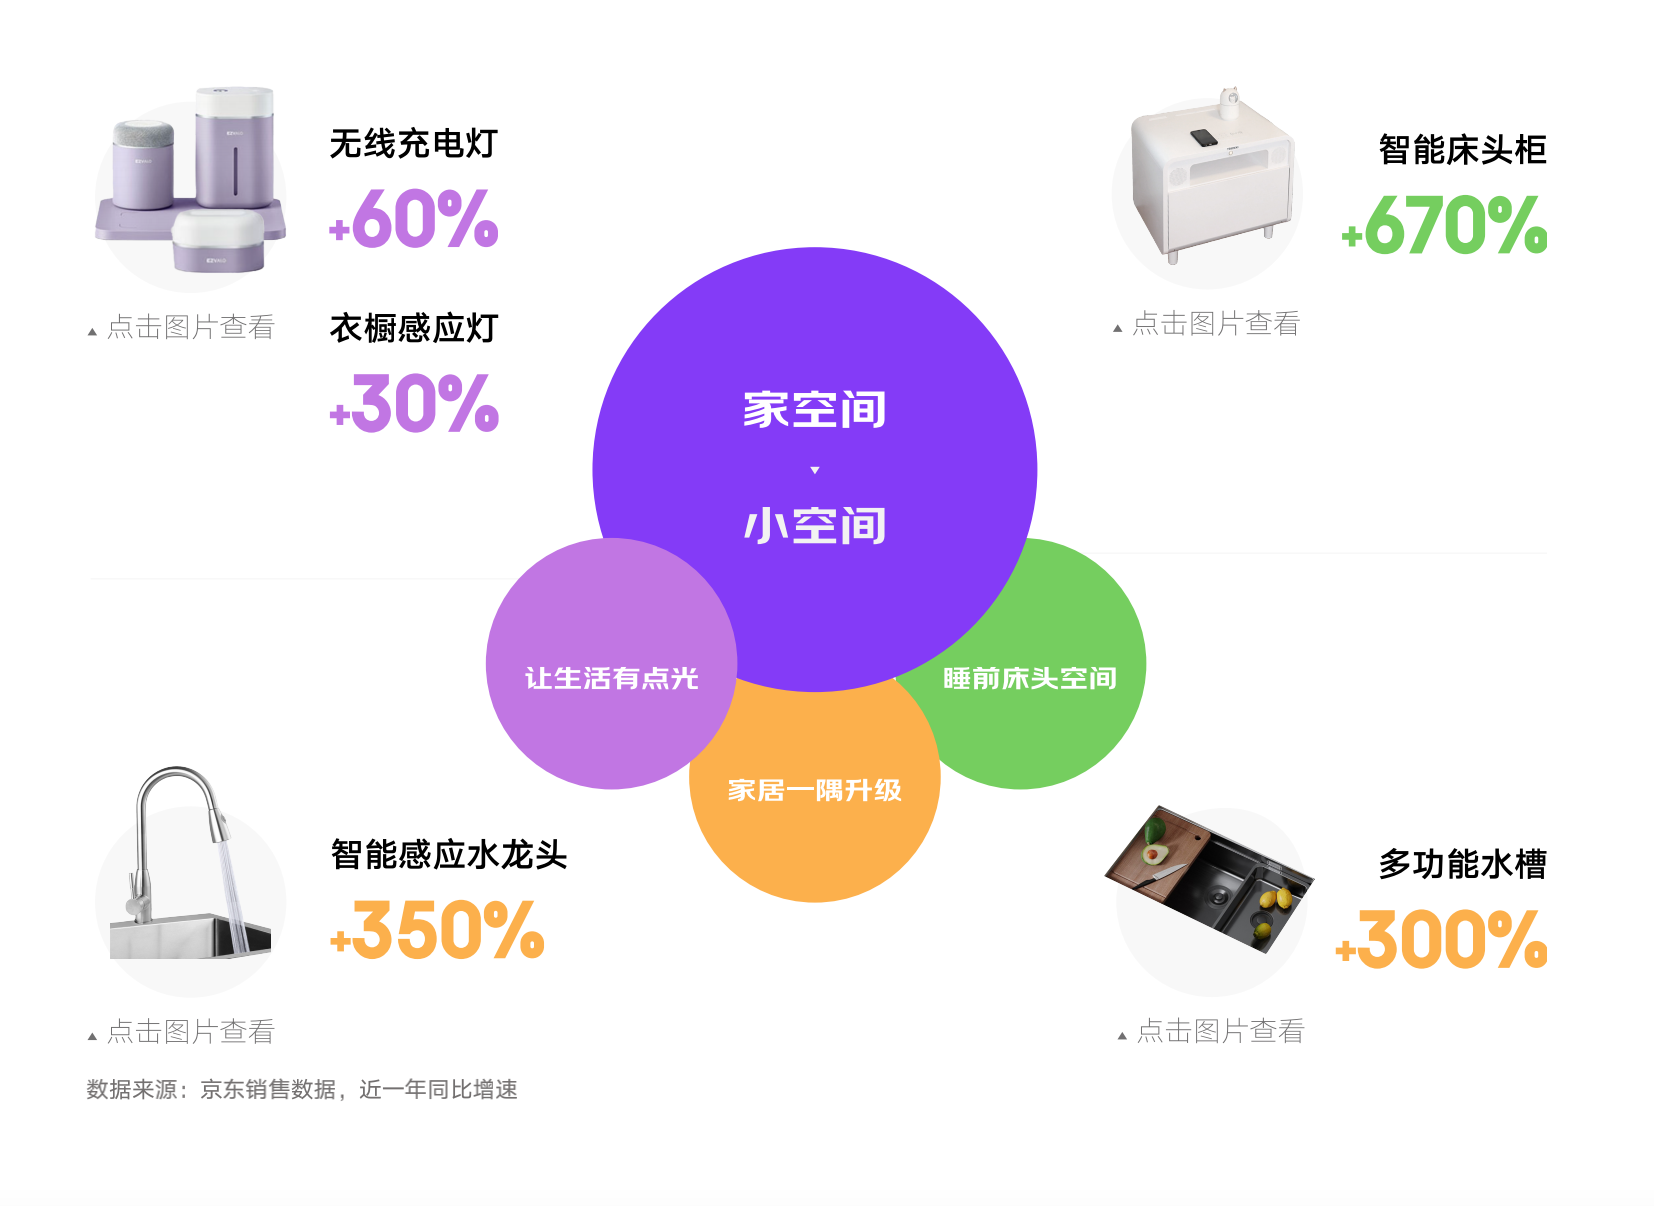 京东618发布消费新趋势 五大新场景助力品牌挖掘新增量